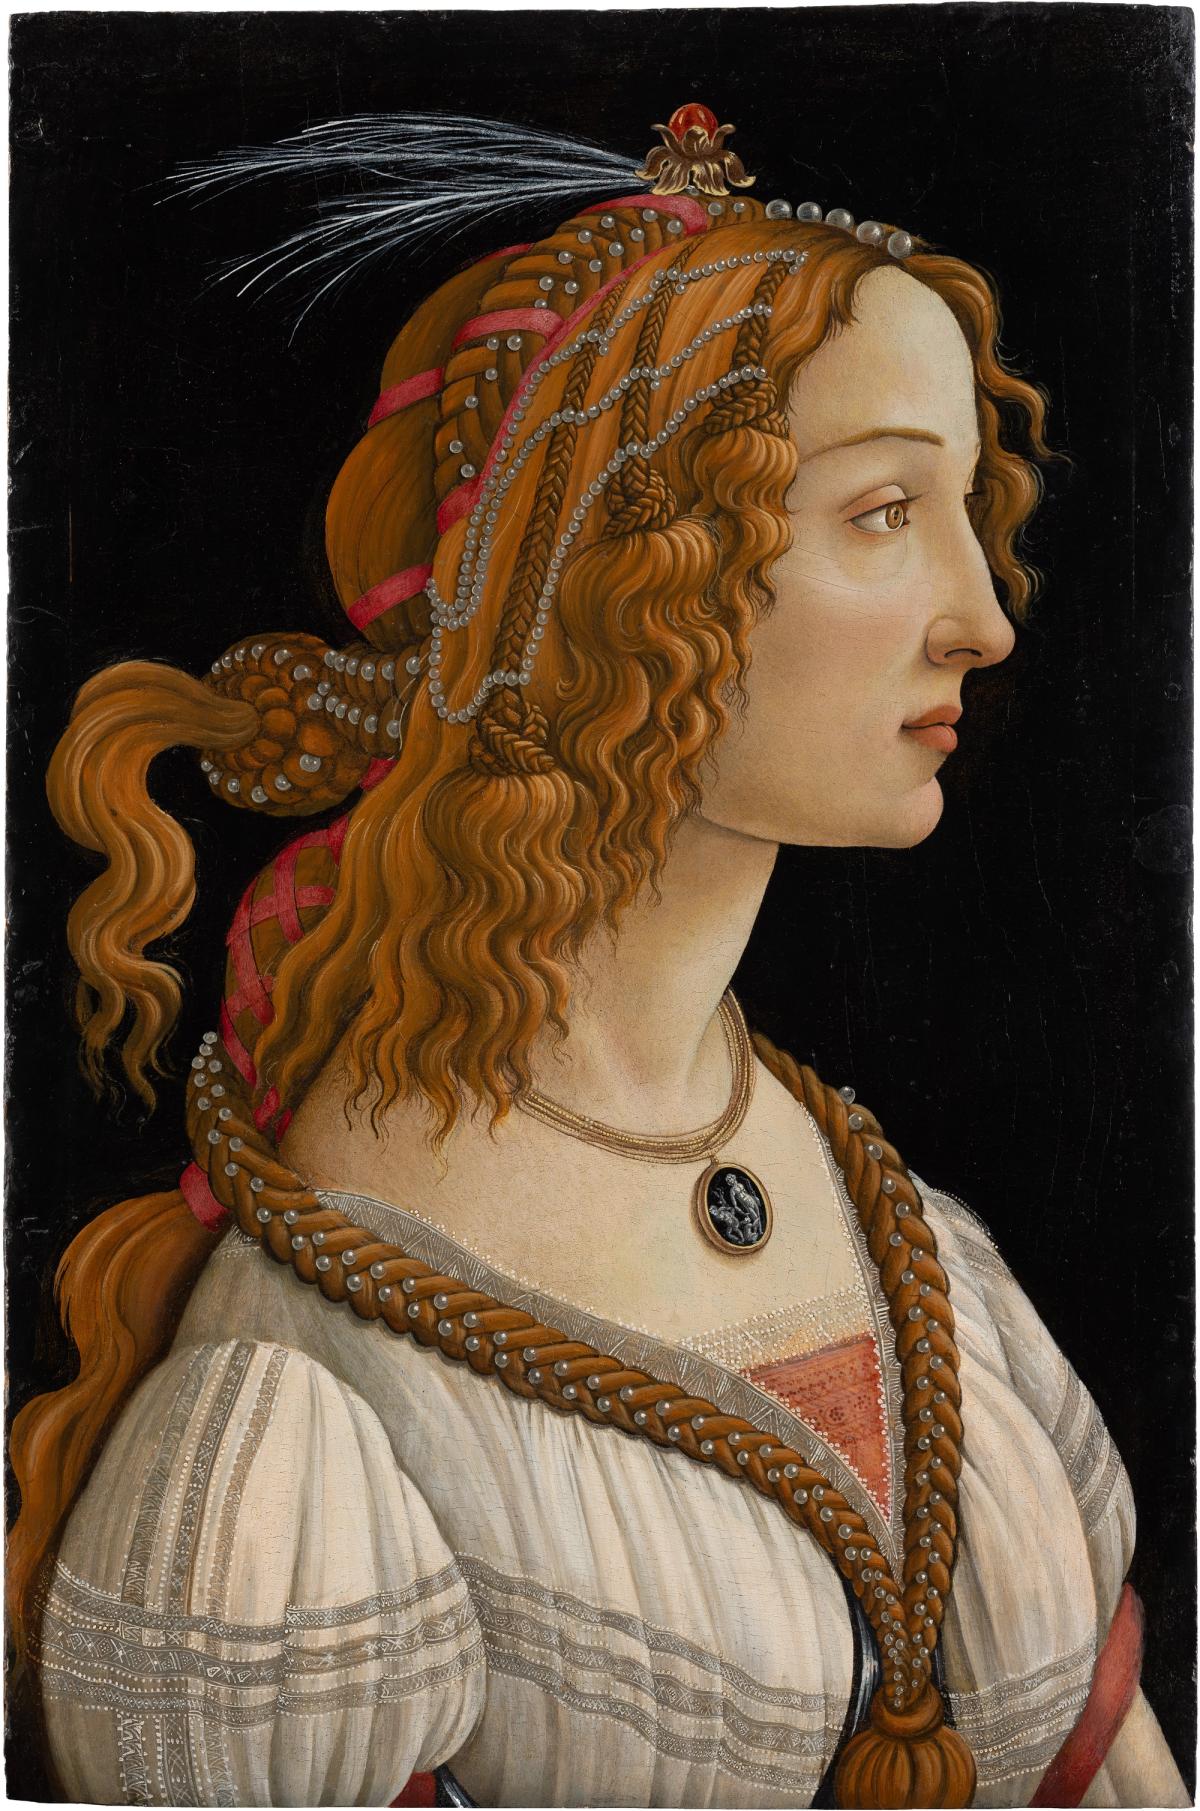 Alessandro Filipepi, dit Sandro Botticelli, Portrait de jeune femme dit La Belle Simonetta, vers 1485, tempera et huile sur bois de peuplier, Städel Museum, Francfort-sur-le-Main. © Städel Museum, Frankfurt am Main